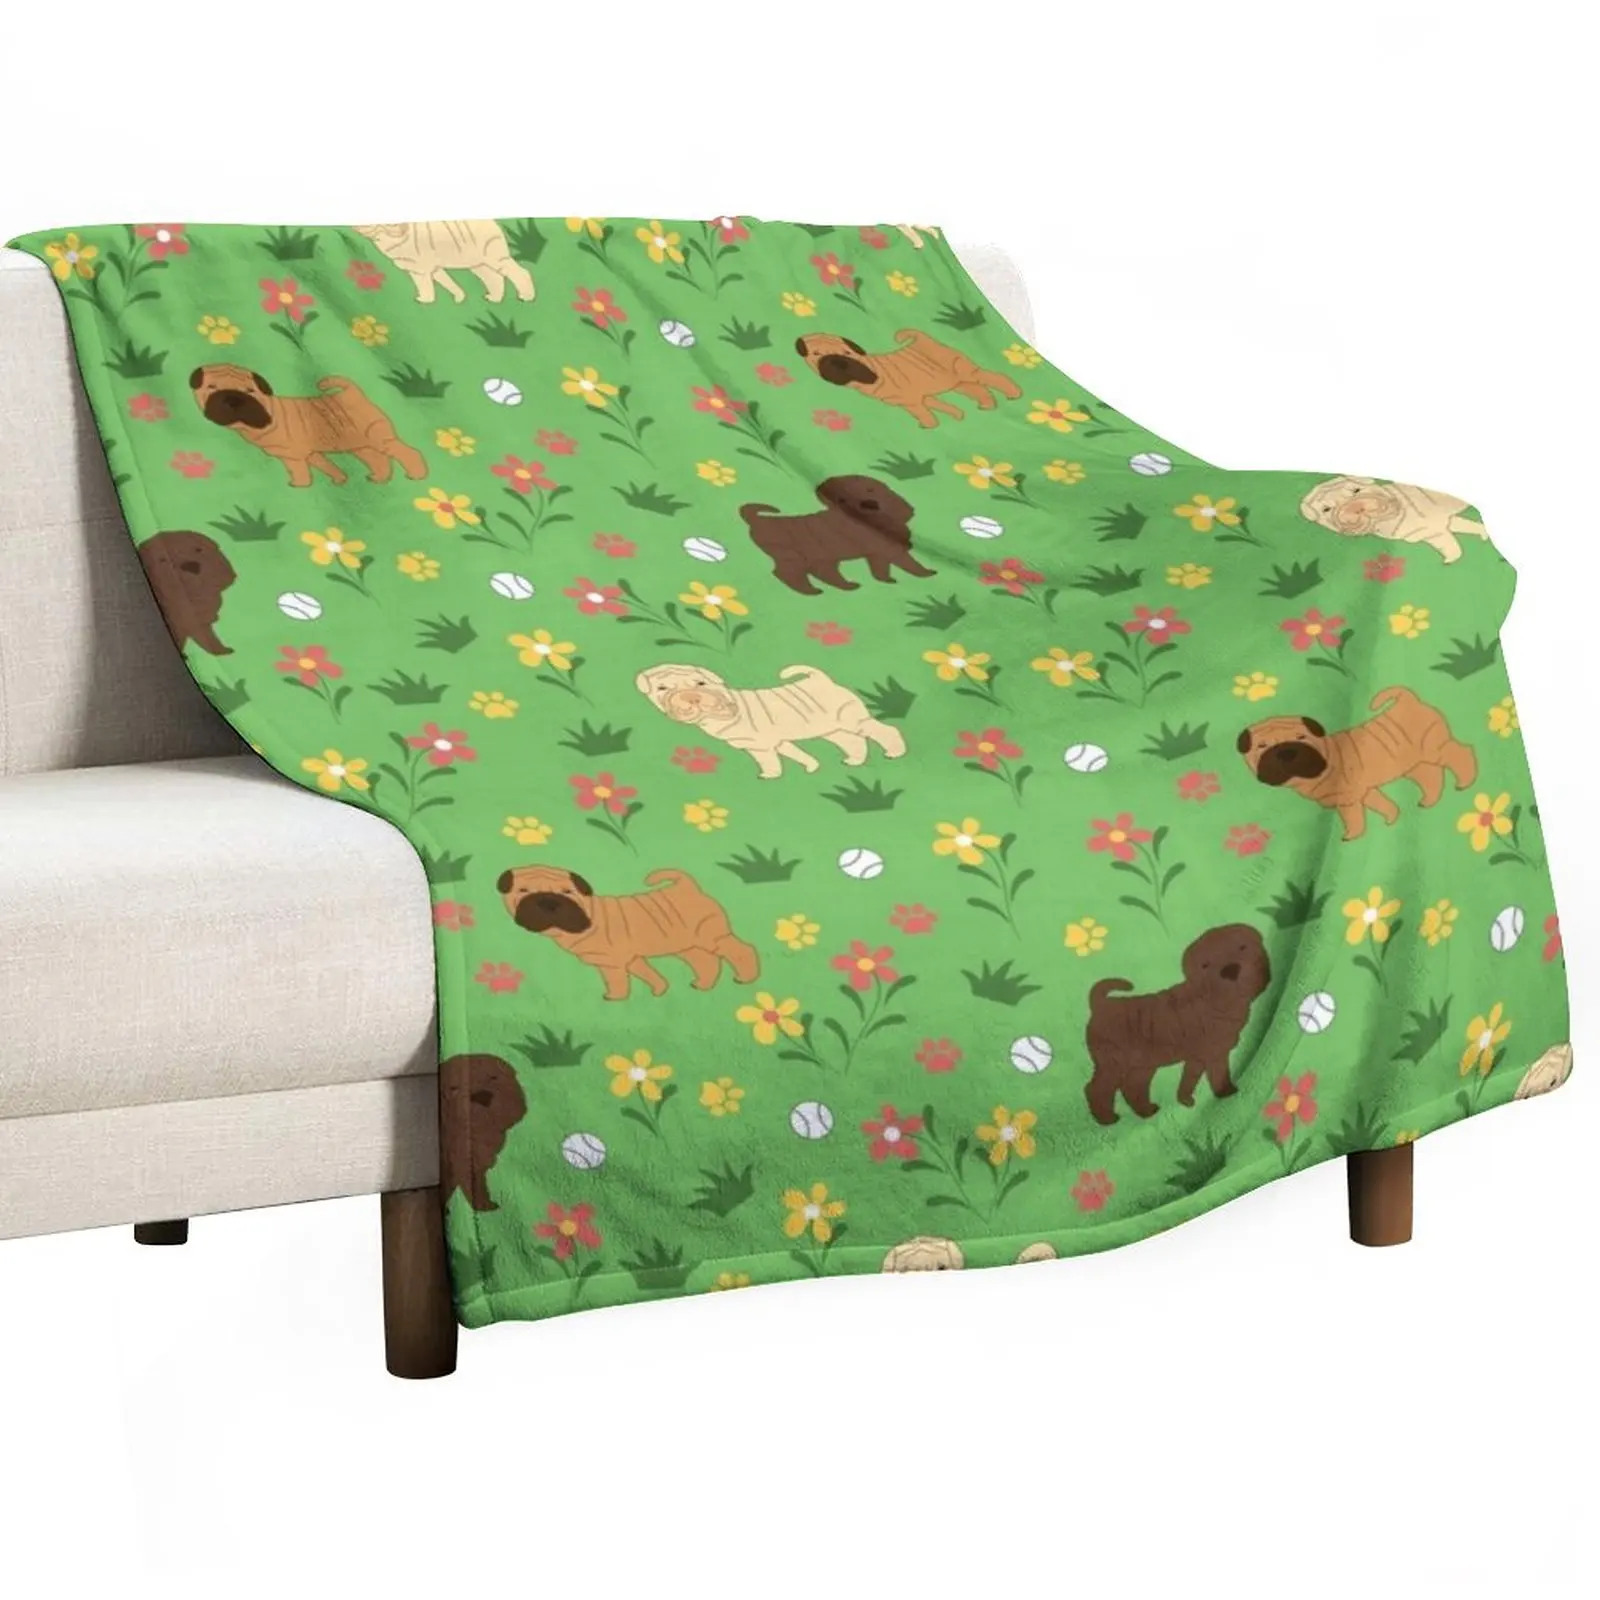 

Одеяло Shar Pei с цветами, односпальное одеяло, диван-кровать